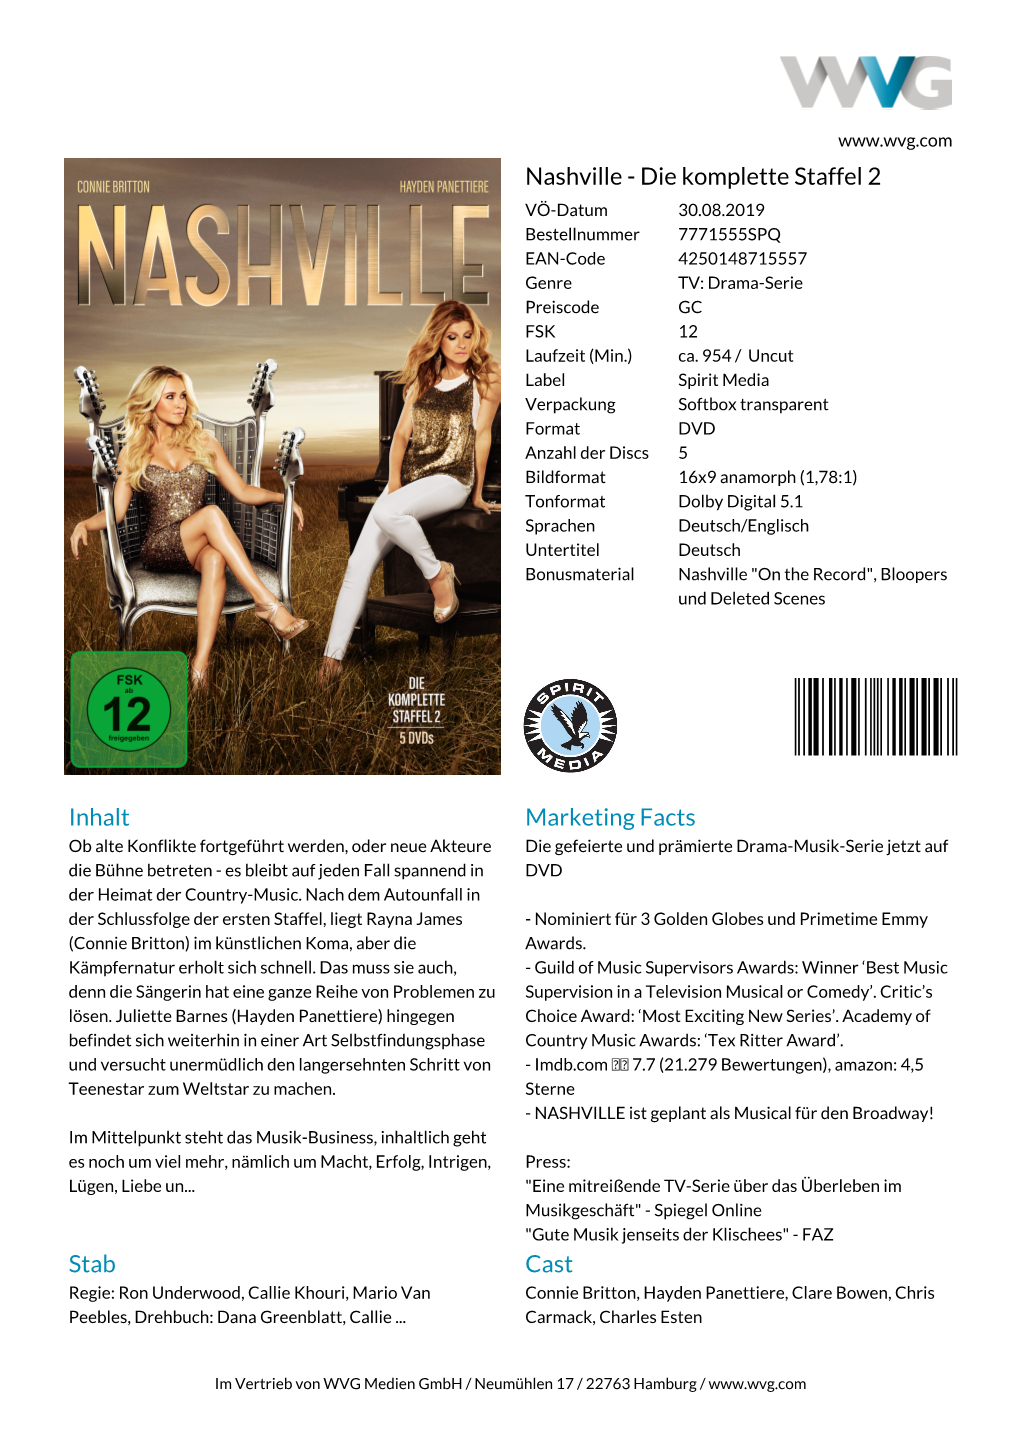 Nashville - Die Komplette Staffel 2 VÖ-Datum 30.08.2019 Bestellnummer 7771555SPQ EAN-Code 4250148715557 Genre TV: Drama-Serie Preiscode GC FSK 12 Laufzeit (Min.) Ca